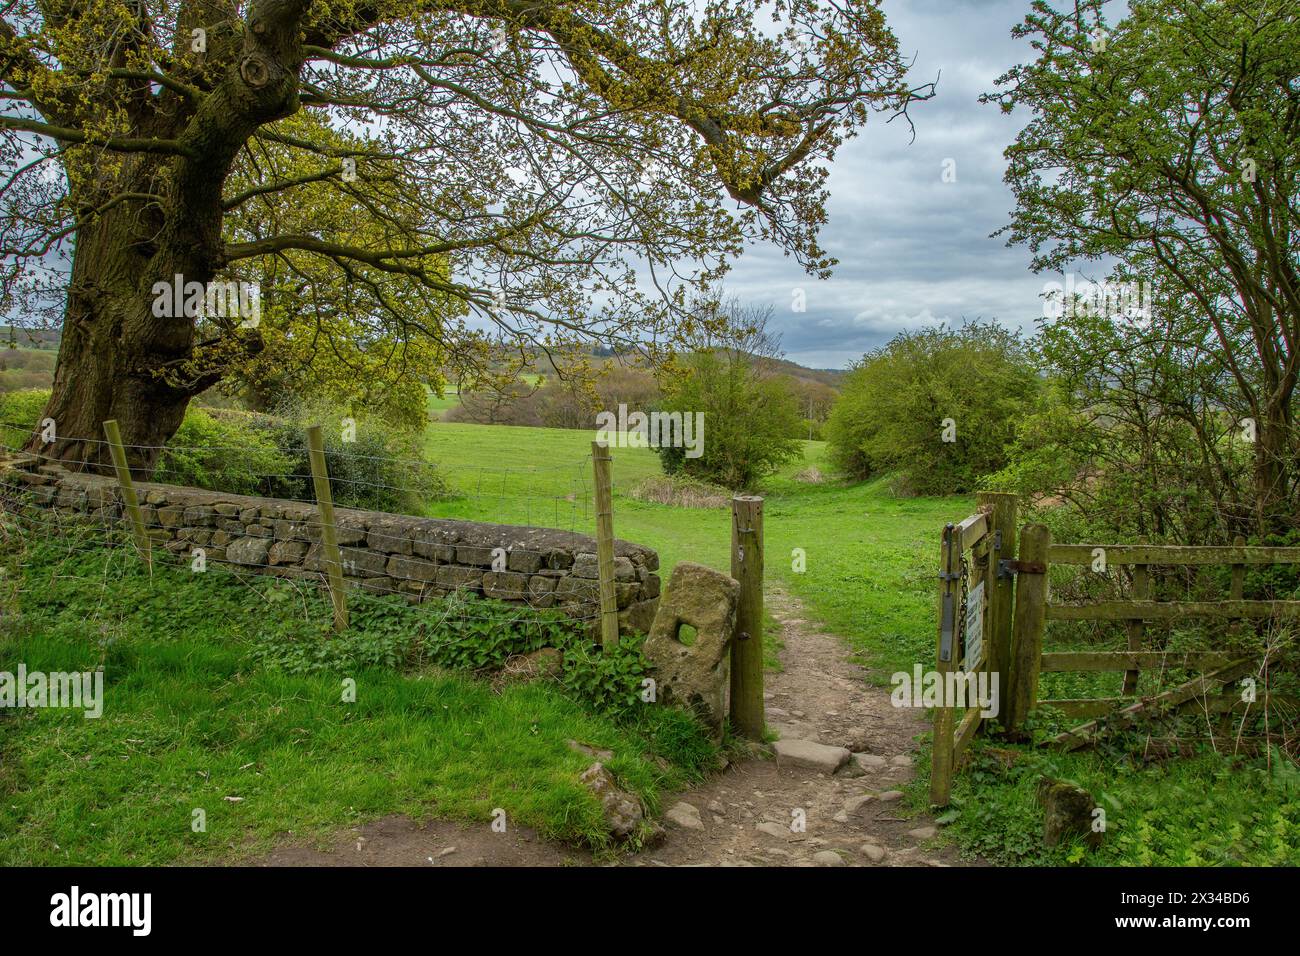 Une porte ouverte en bois menant à Gill Beck Valley à Baildon, Yorkshire. Prises en avril, les nouvelles feuilles ne font qu’apparaître sur les arbres. Banque D'Images